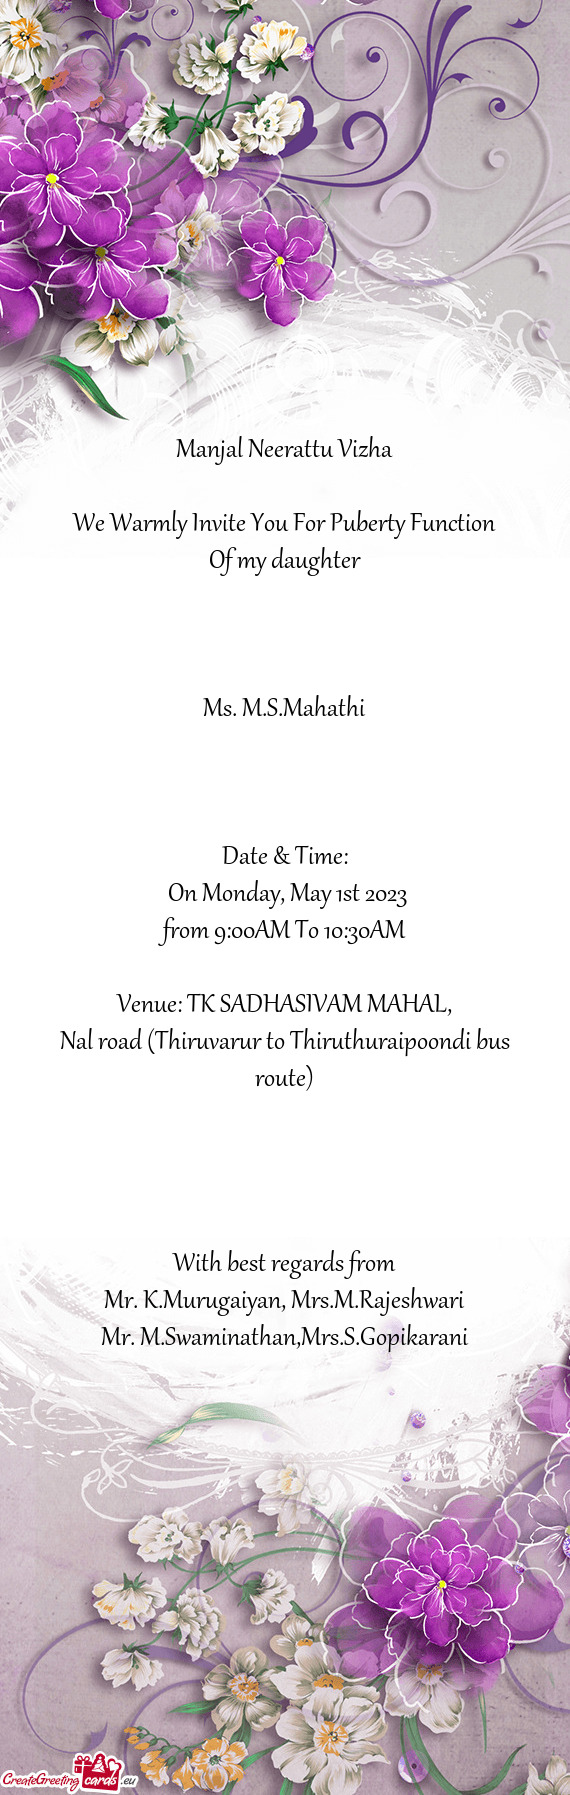 Ms. M.S.Mahathi